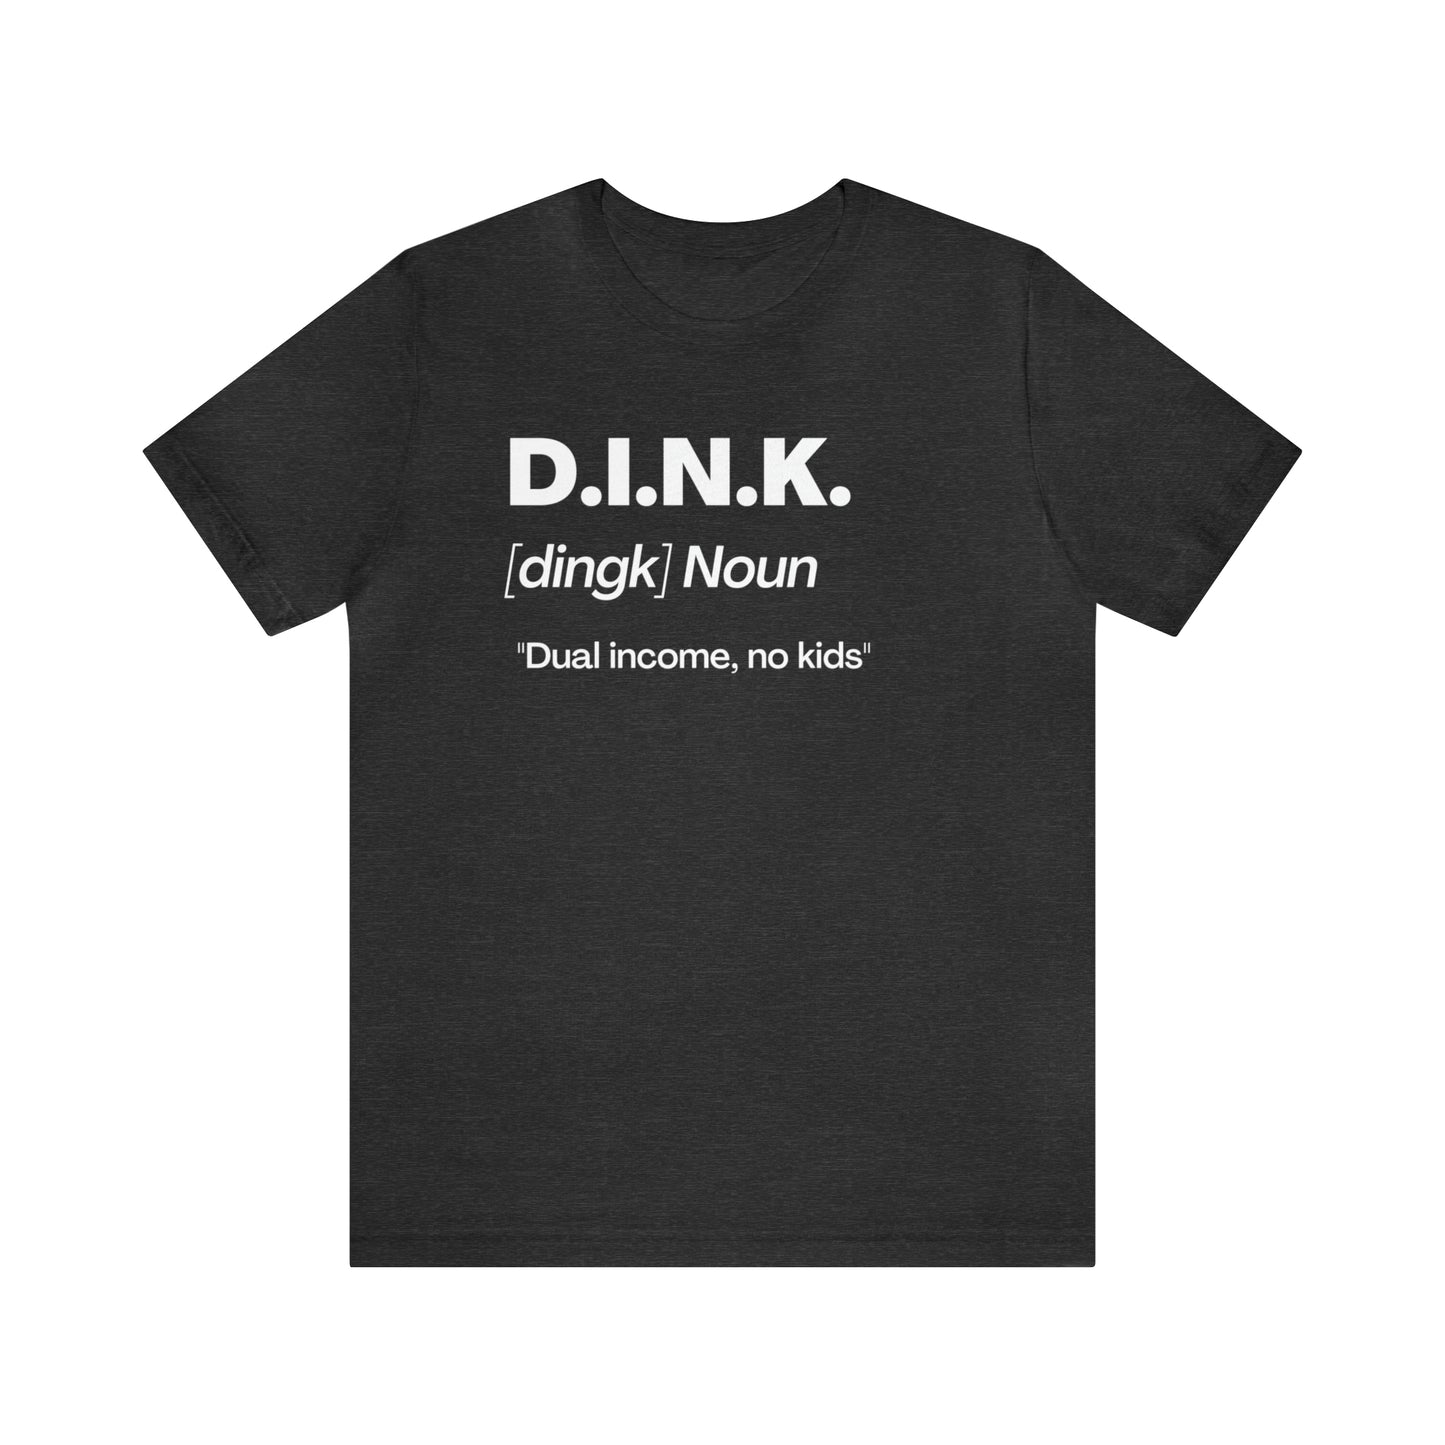 D.I.N.K. Definition Tee